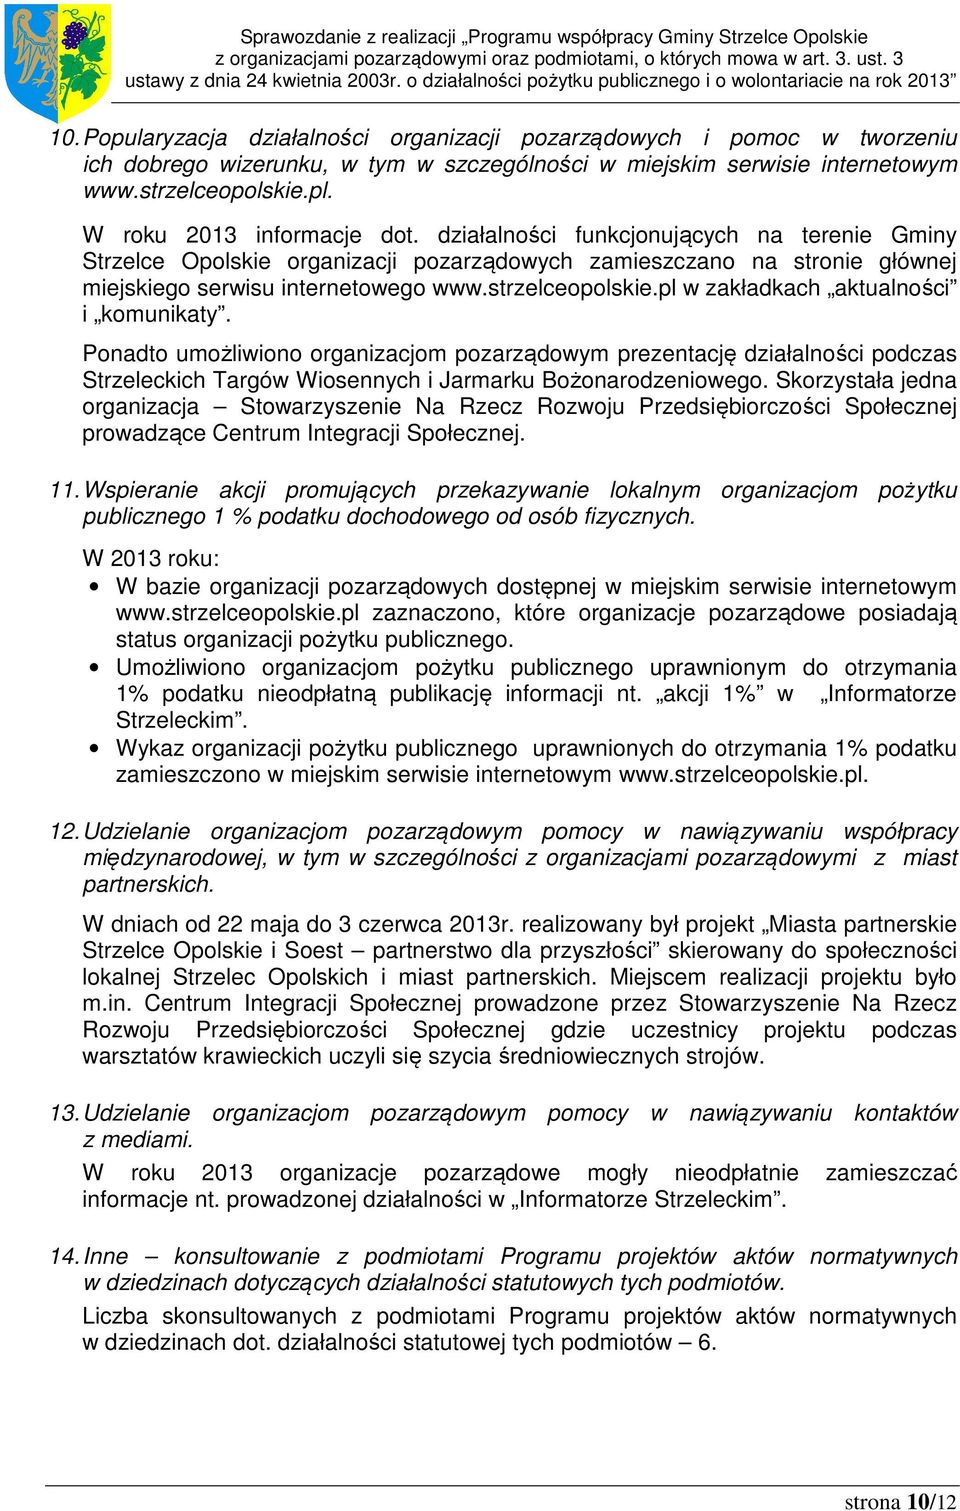 W roku 2013 informacje dot. działalności funkcjonujących na terenie Gminy organizacji pozarządowych zamieszczano na stronie głównej miejskiego serwisu internetowego www.strzelceopolskie.